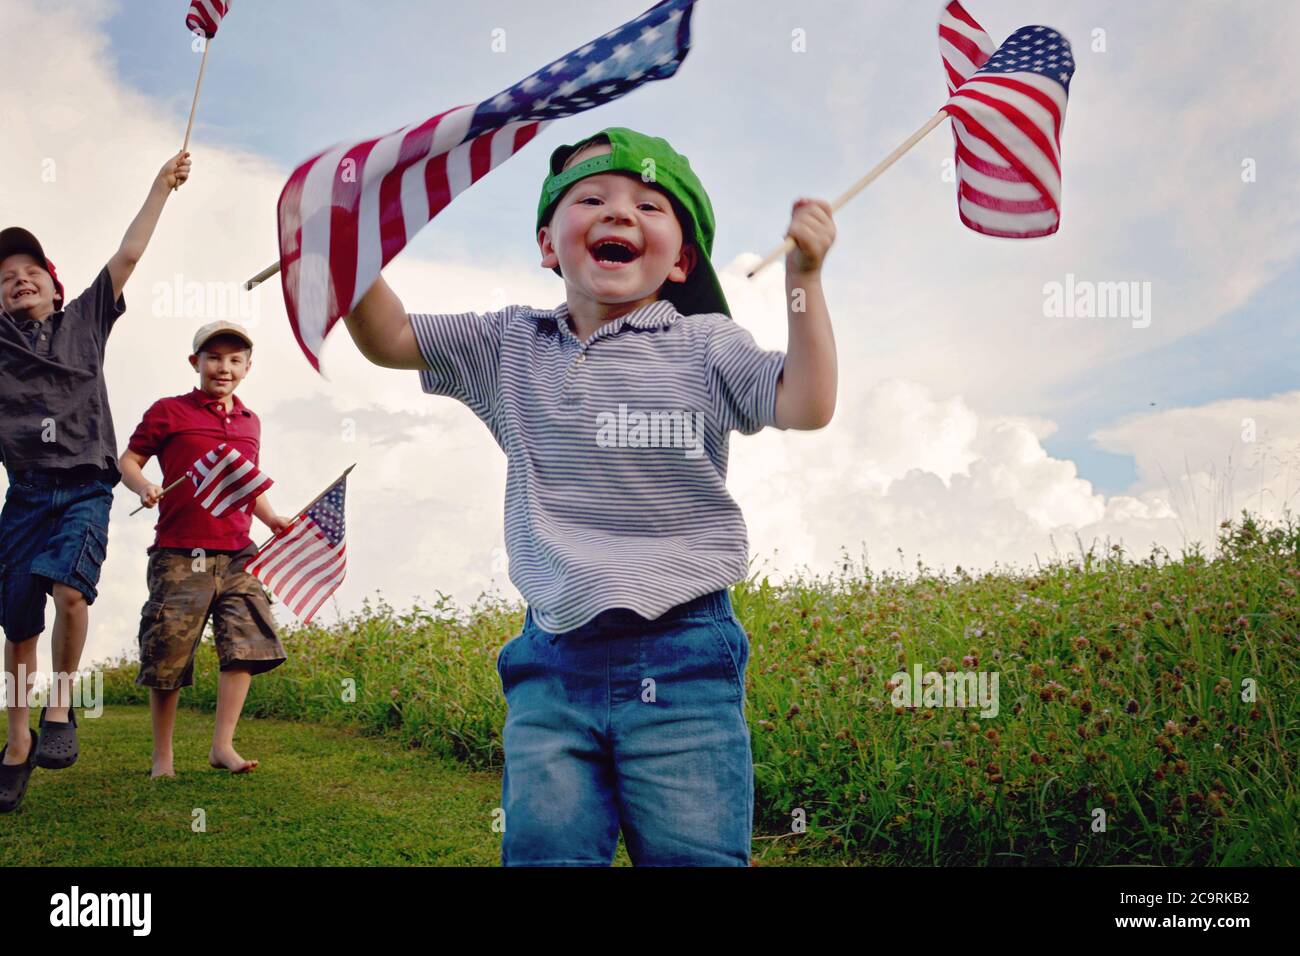 Drei Jungen halten American Flags begeistert, während sie winken und Der jüngste Junge vorne ist der glücklichste von allen Mit dem größten Lächeln Stockfoto